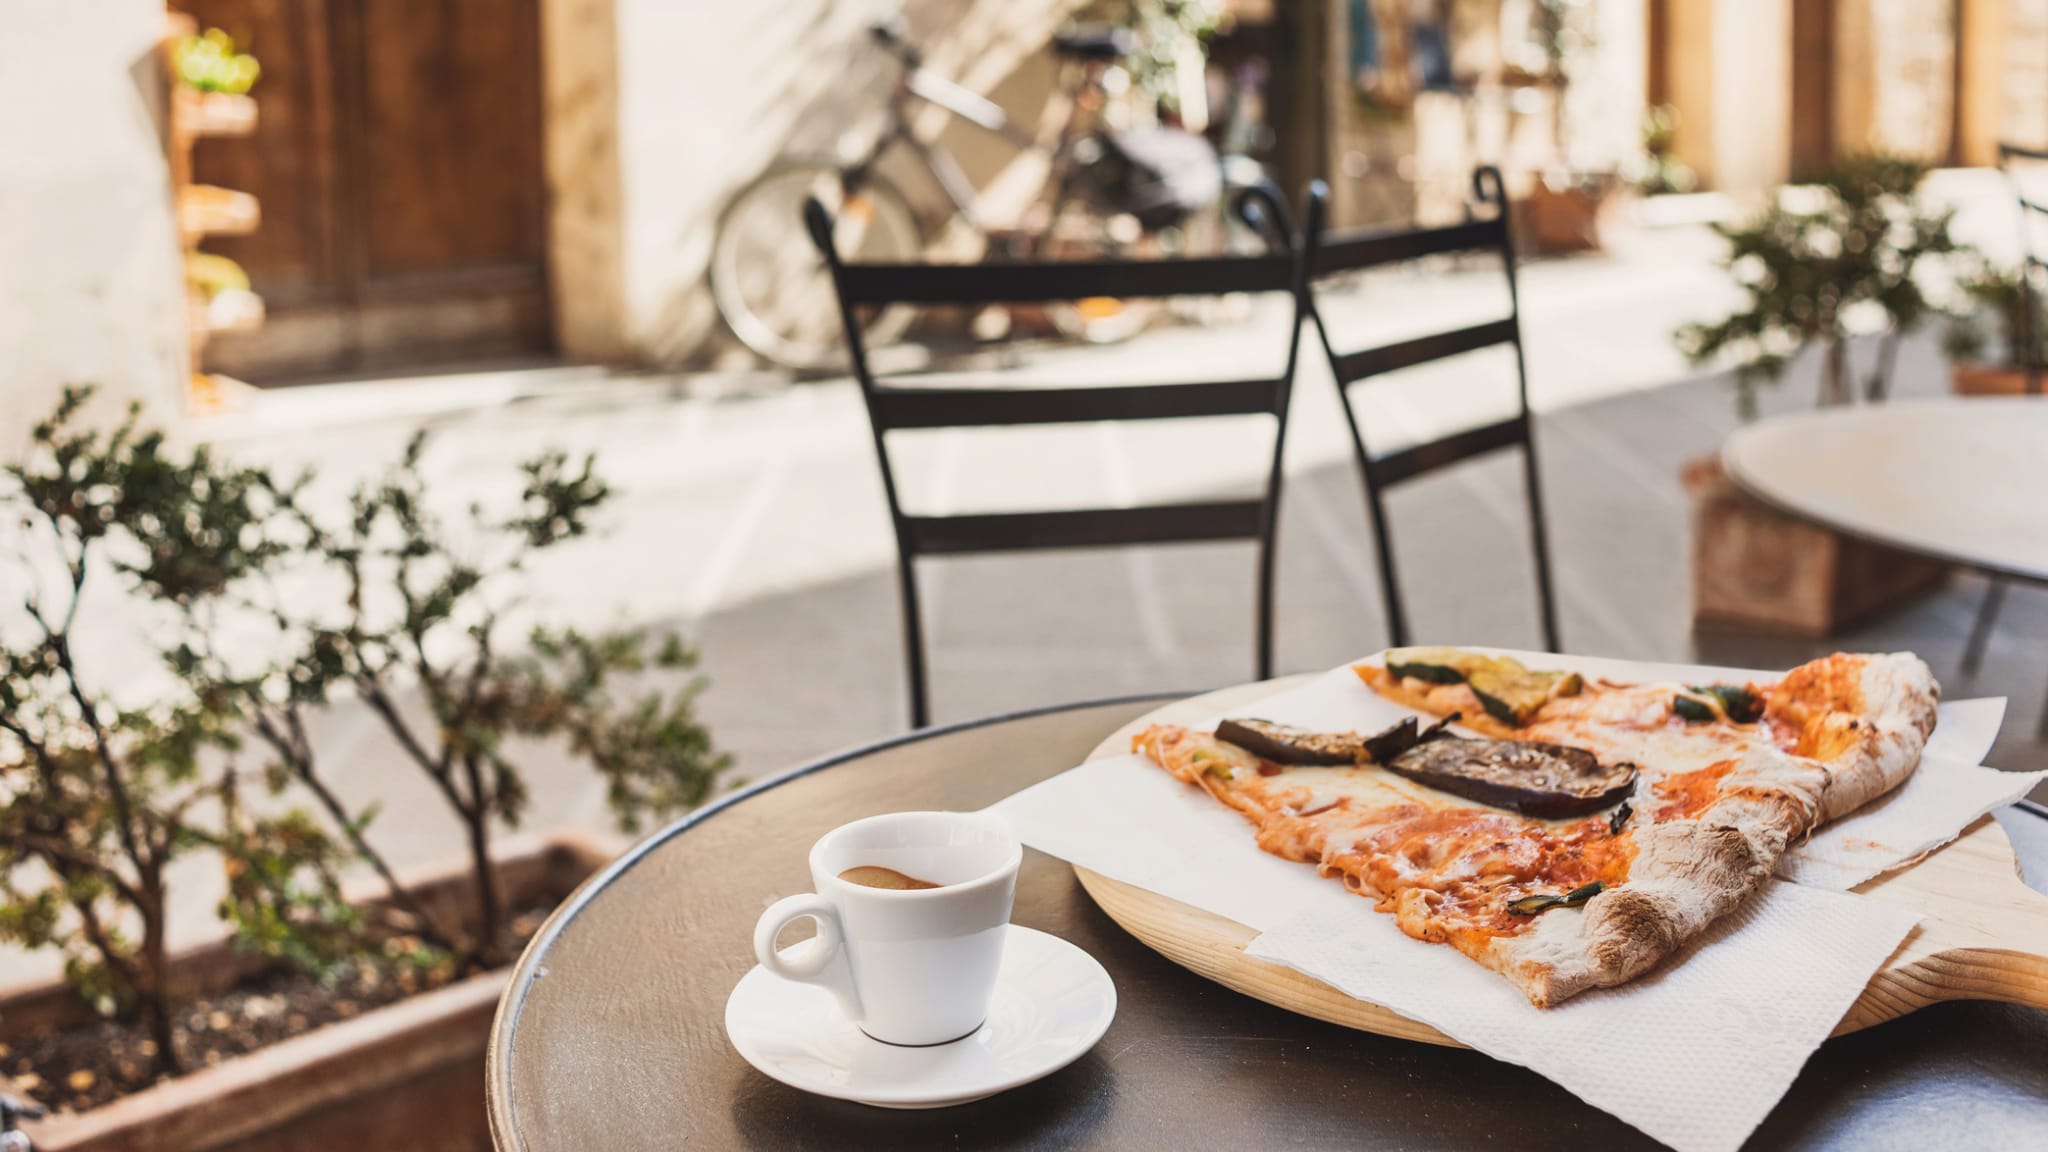 Pizza und Kaffee in einem italienischen Café genießen © Poike/iStock / Getty Images Plus via Getty Images